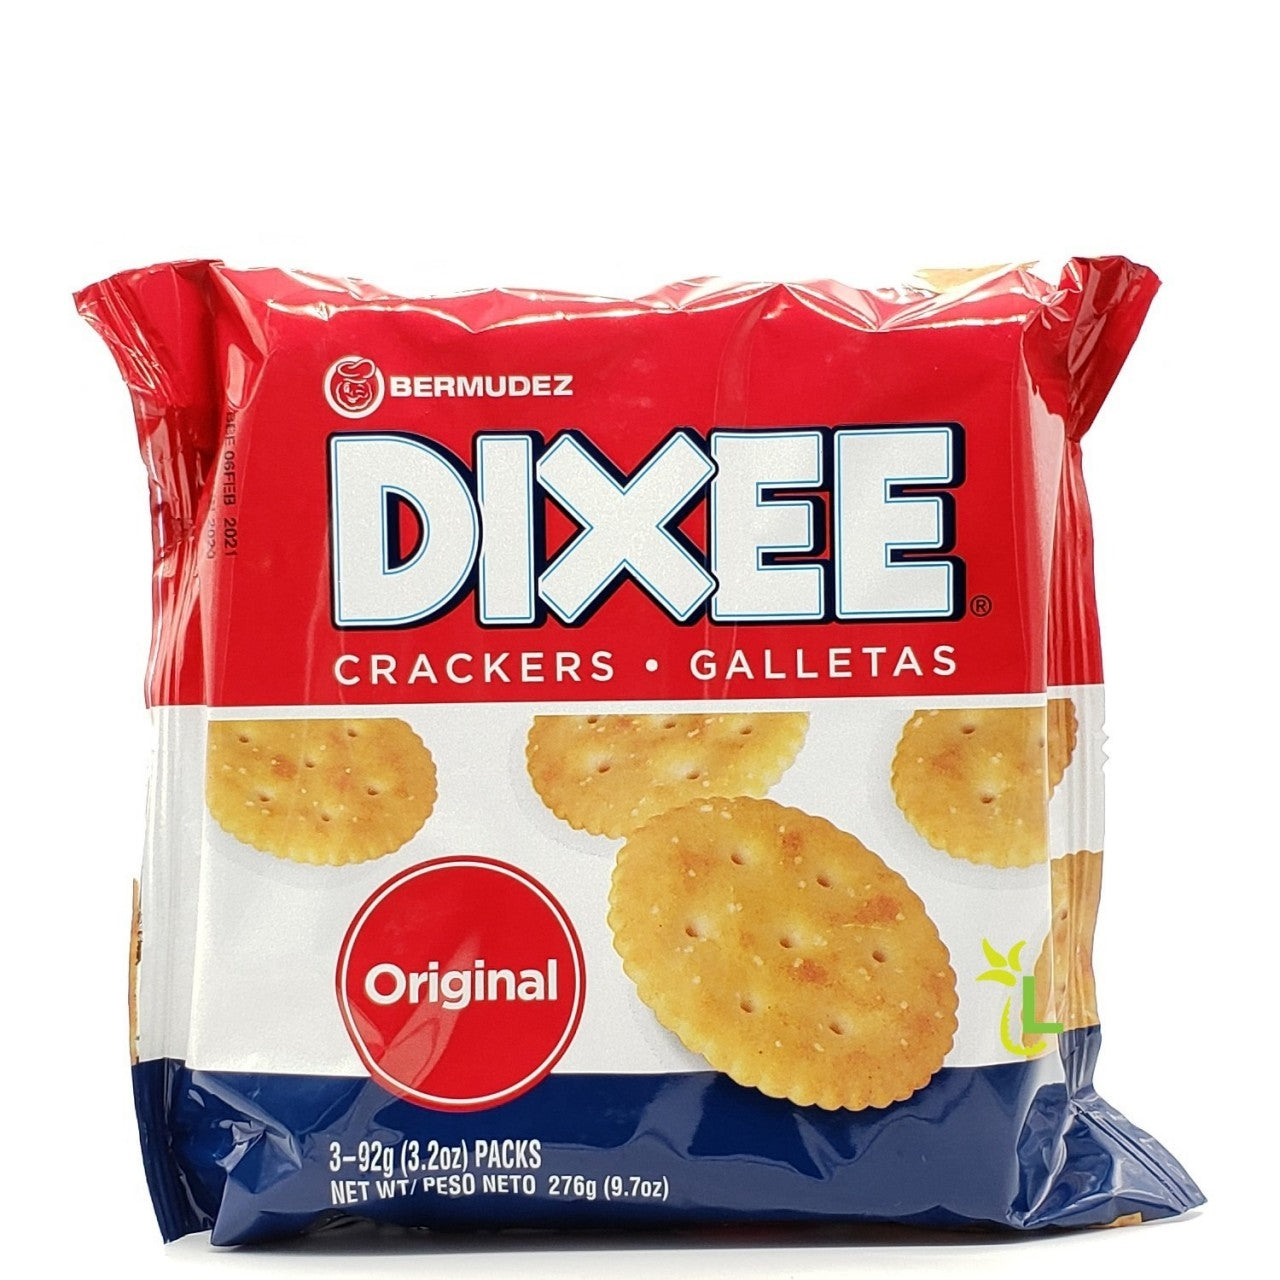 DIXEE Crackers 3 pk 9.7oz